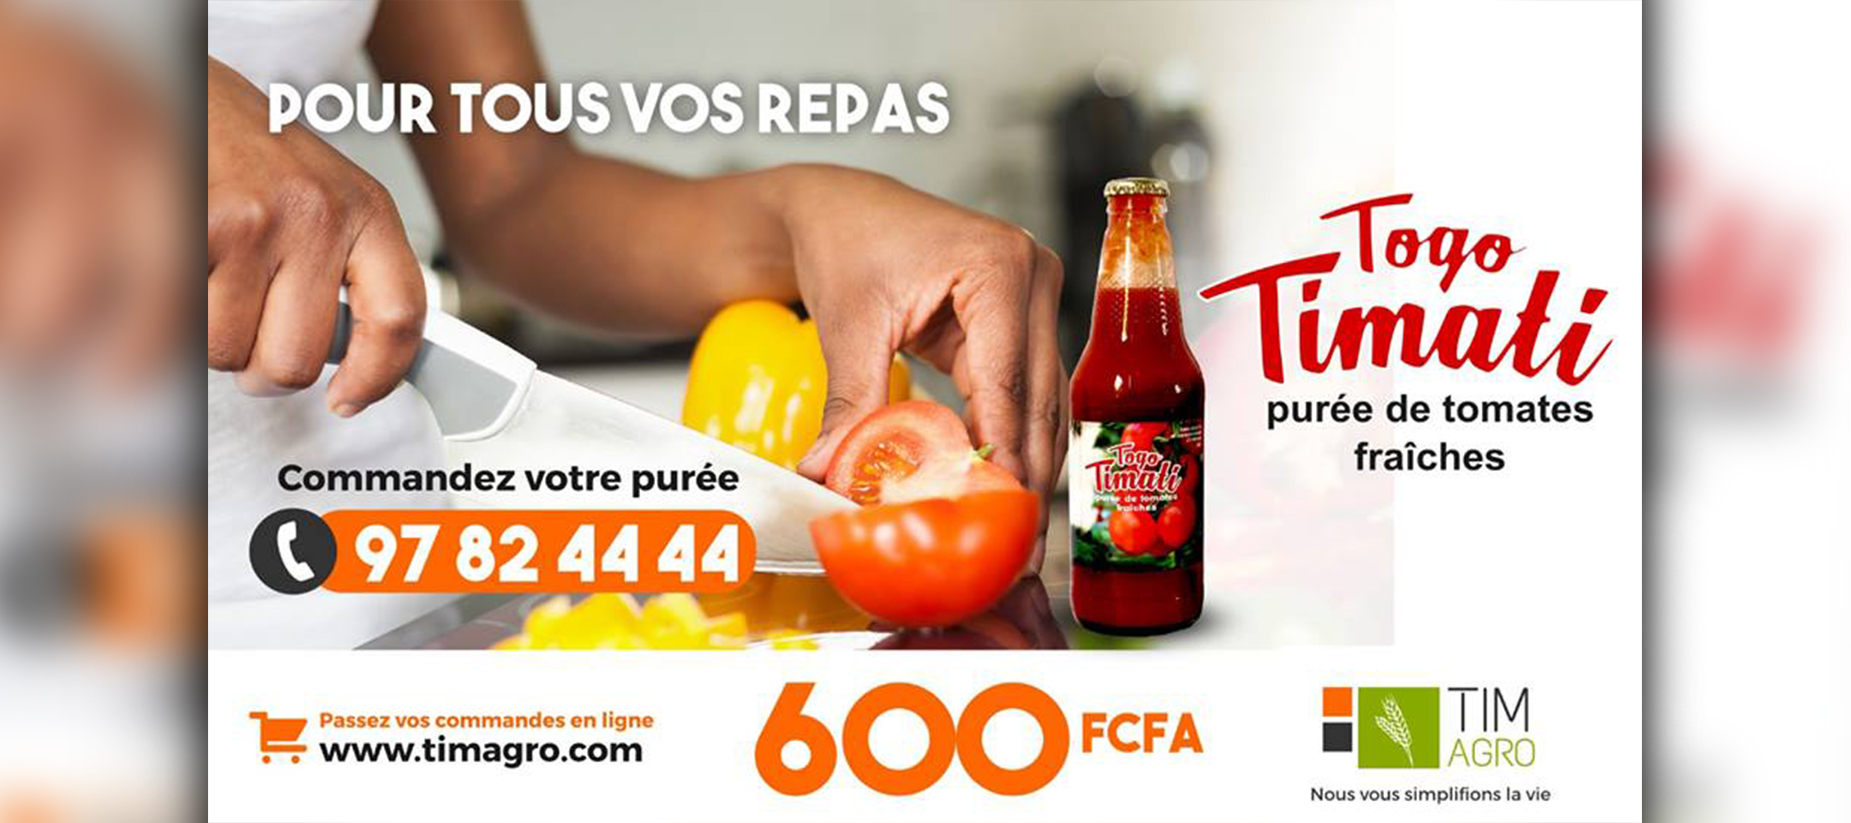 TOGO TIMATI, de la purée de tomate fraîche Made in Togo